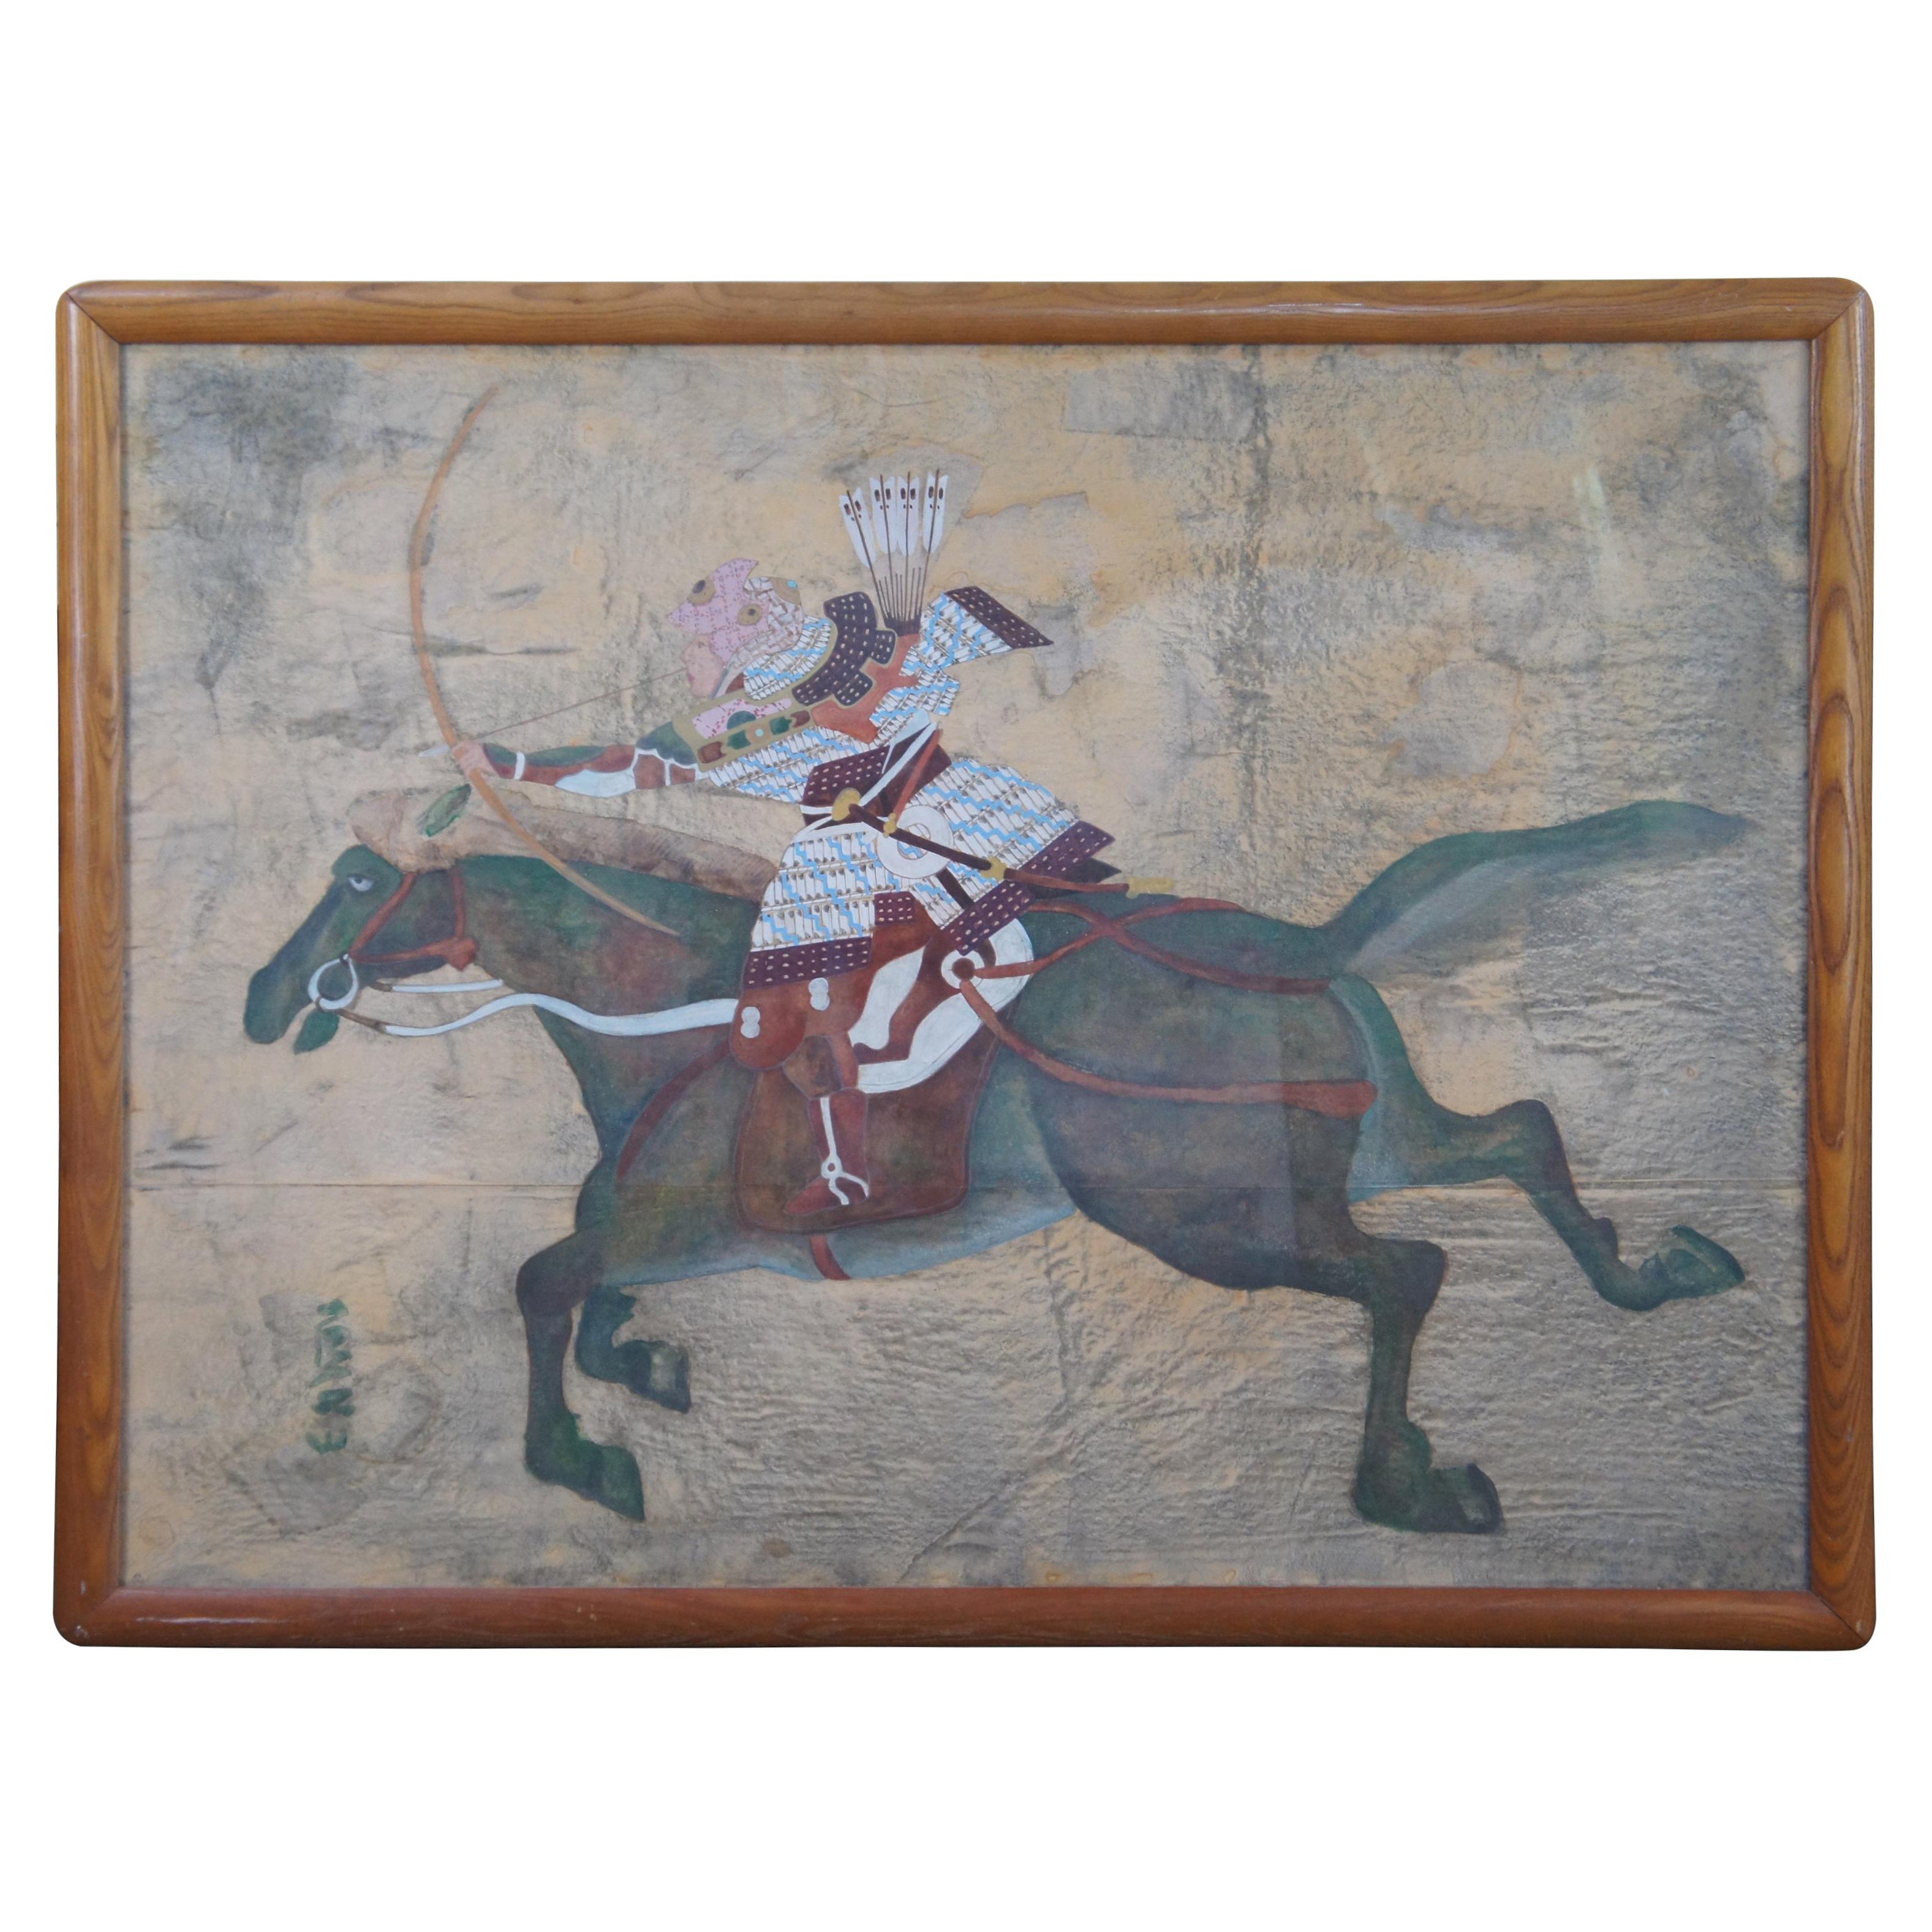 Japanese Imperial Samurai Warrior Minamoto Horseback Watercolor Painting